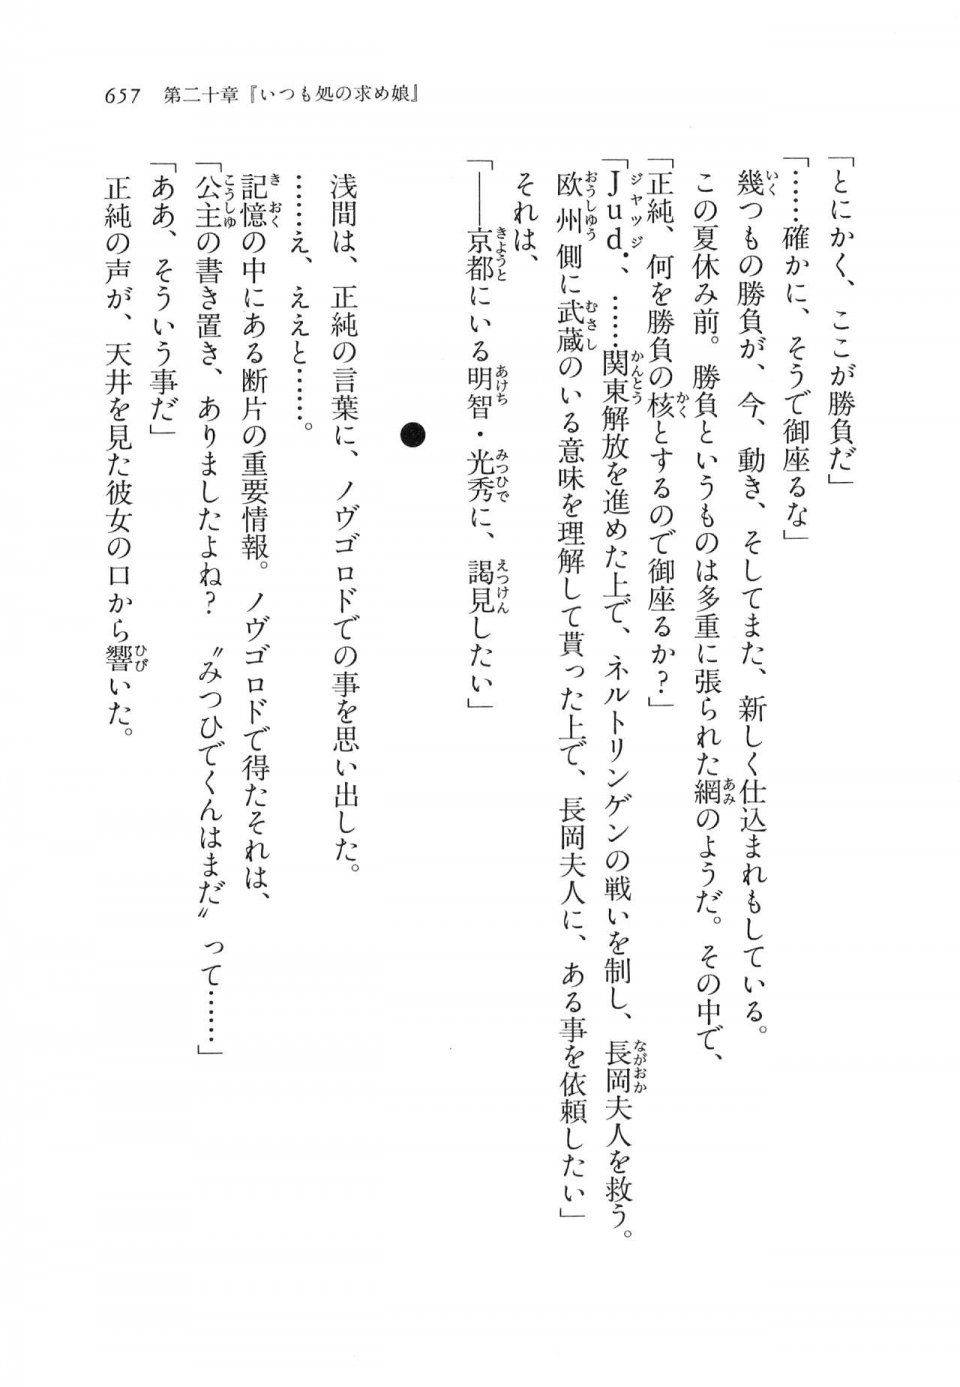 Kyoukai Senjou no Horizon LN Vol 16(7A) - Photo #657